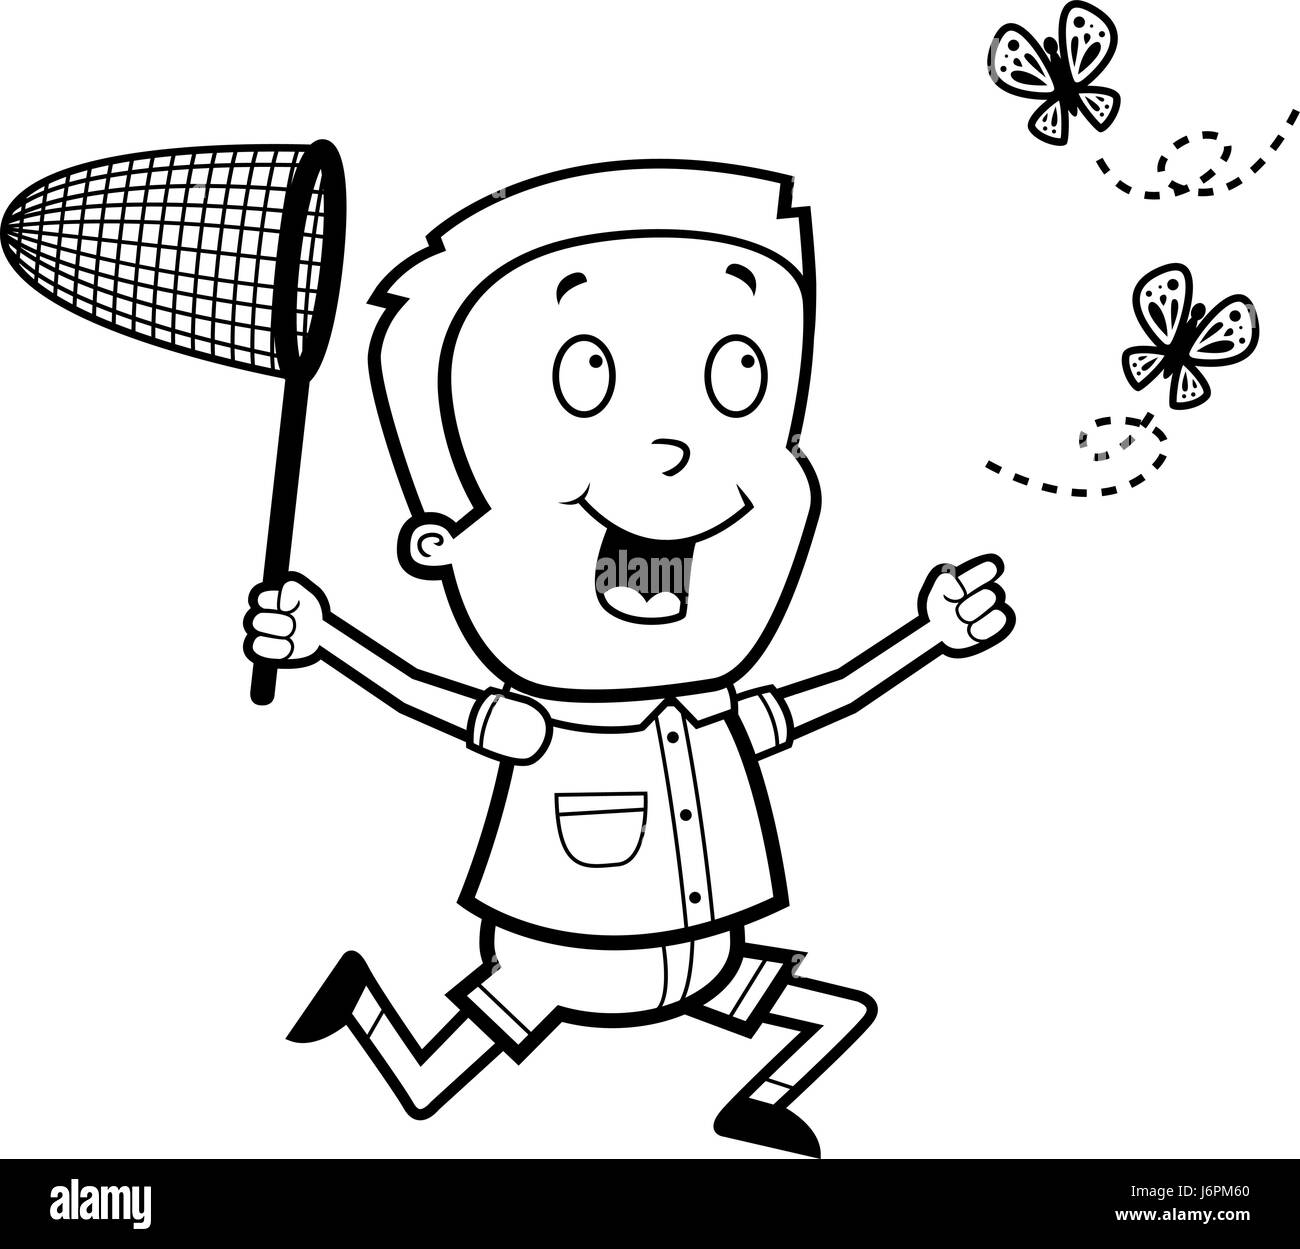 Un felice cartoon boy a caccia di farfalle con un net. Illustrazione Vettoriale